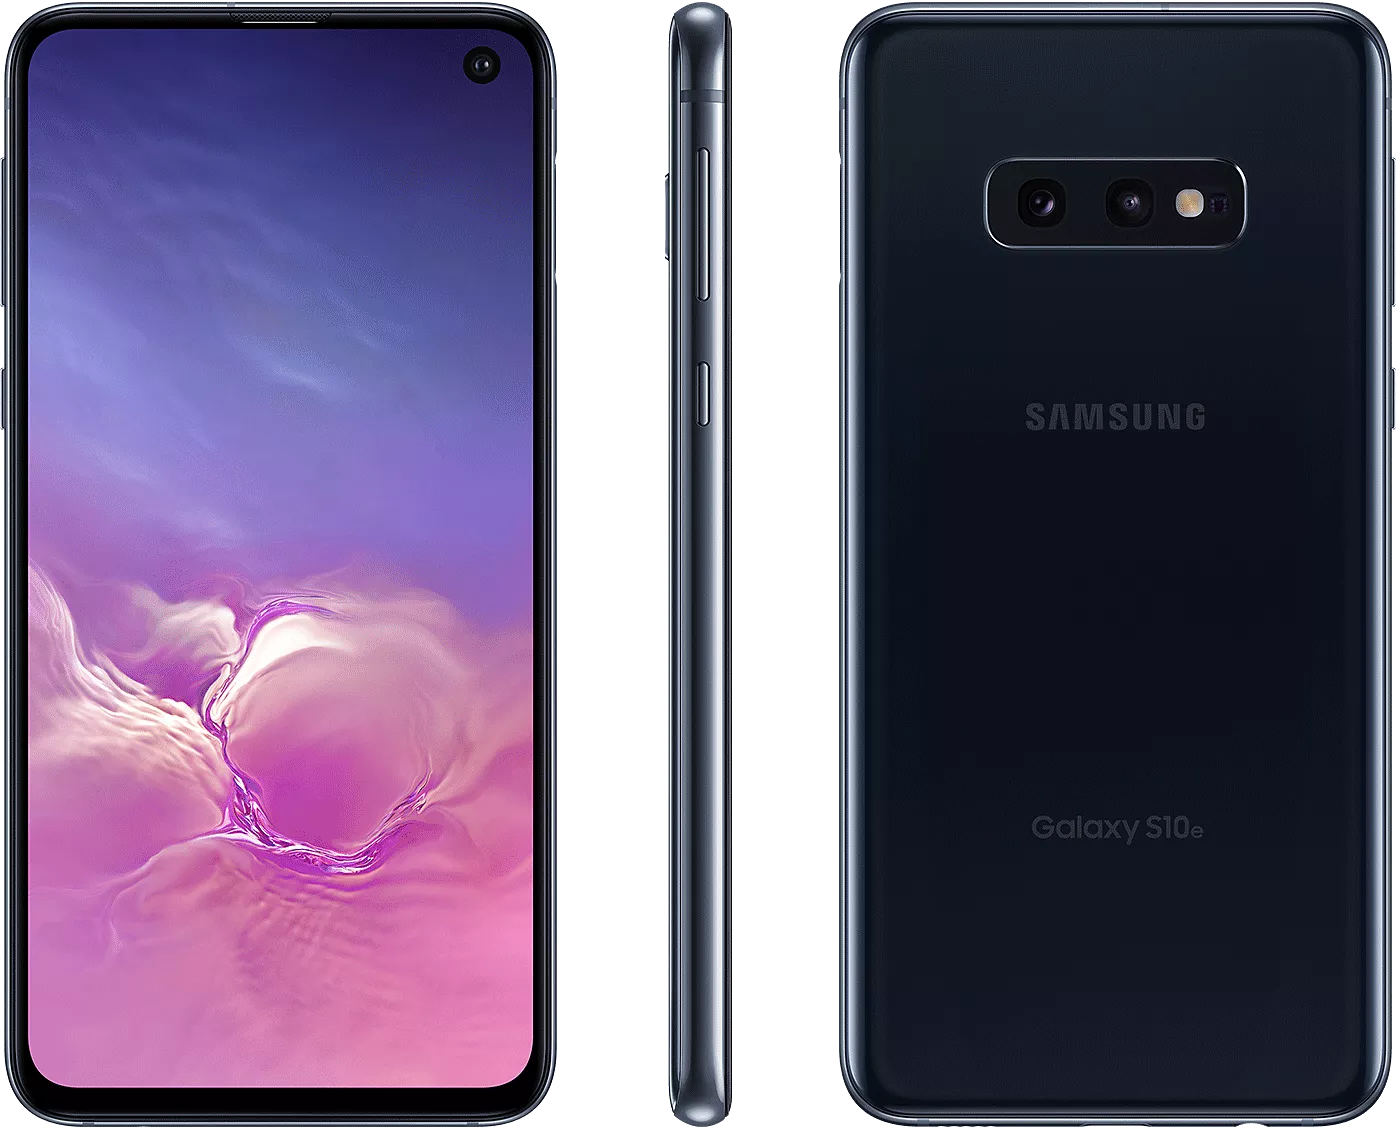 Galaxy s10 8. Samsung Galaxy s10 Plus. Samsung Galaxy s10 / s10 +. Samsung Galaxy s10 128gb. Samsung Galaxy s10 8/128gb.